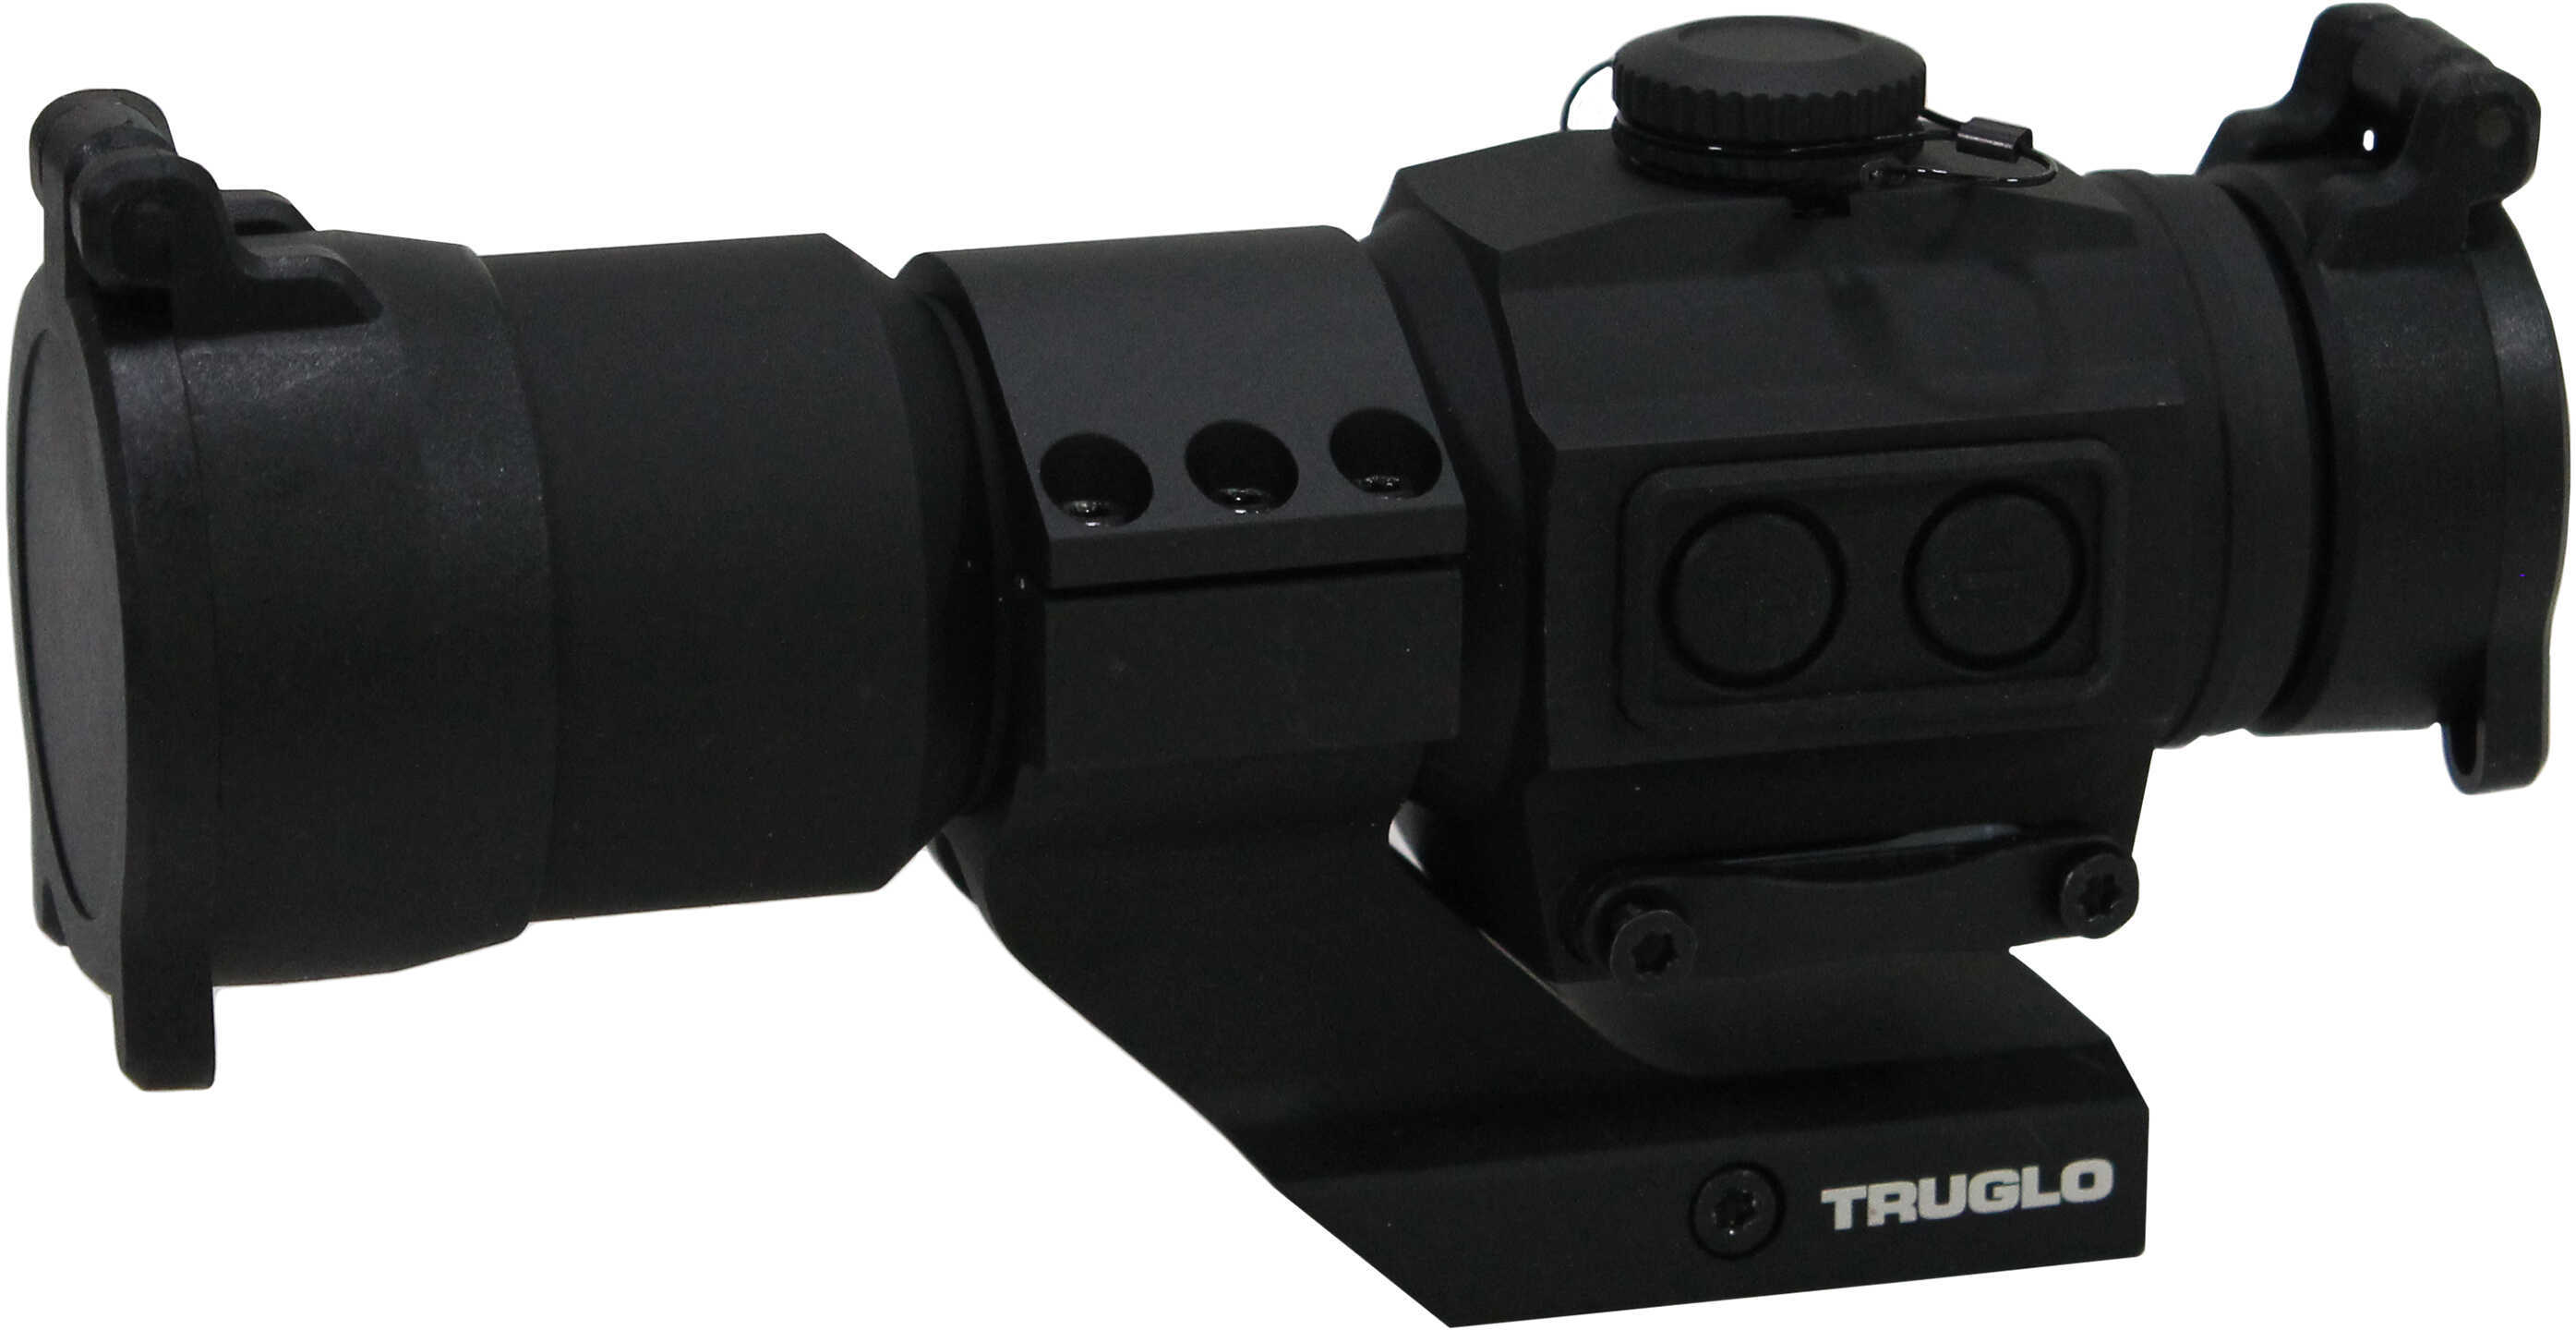 TruGlo Tru-Tec XS 30mm Red Dot Sight